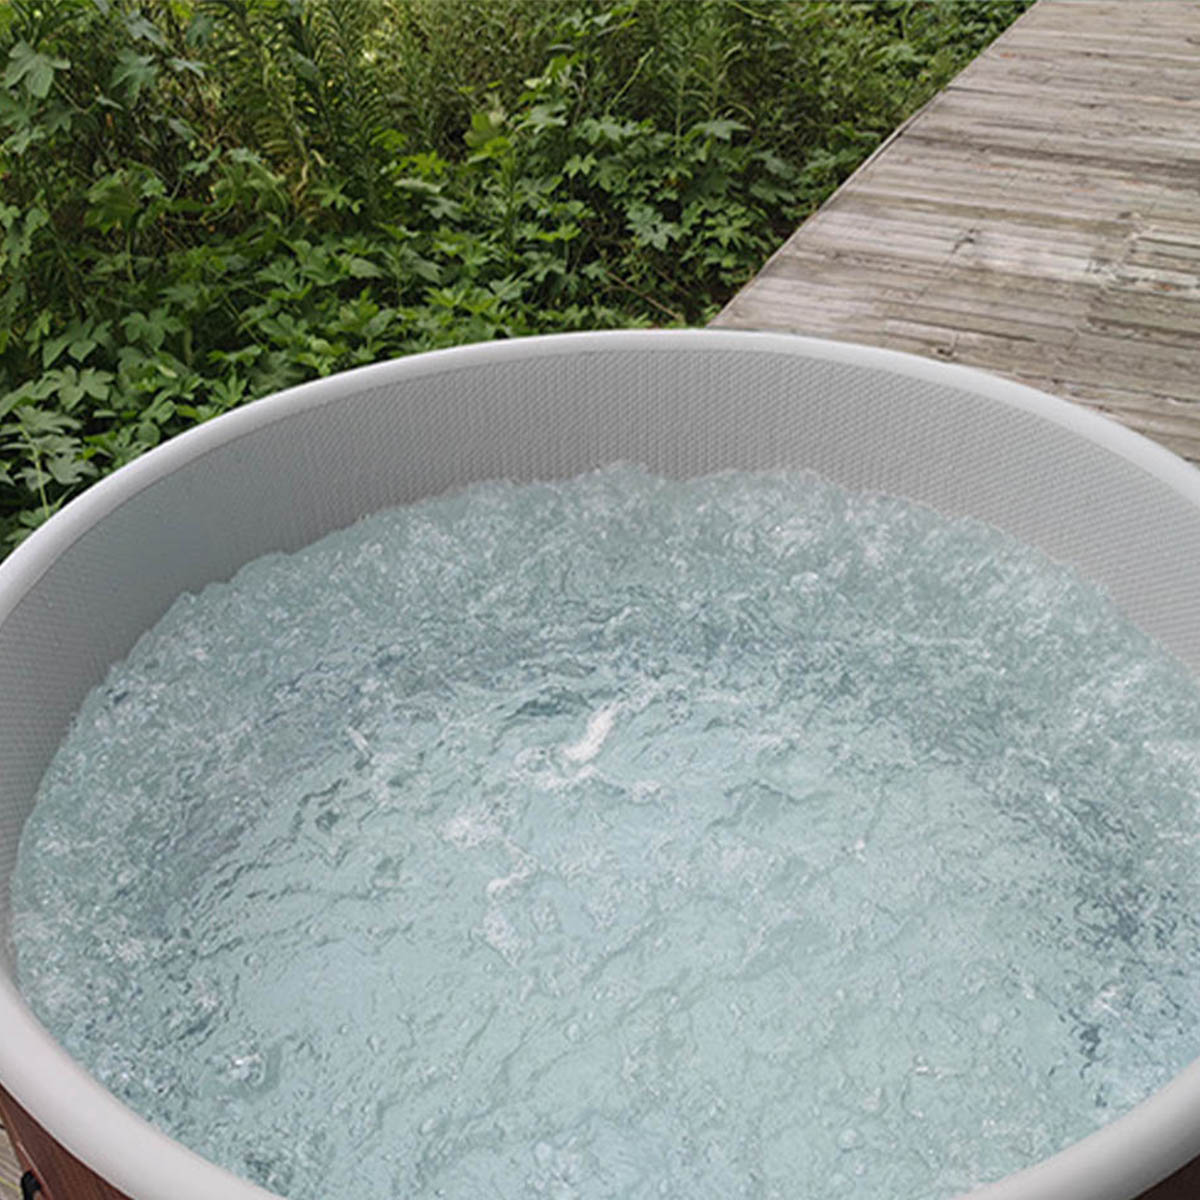 VeroMan ジャグジー バスタブ 空気で膨らむ ホームスパ ジェッドバス インフレターブル 浴槽 お風呂 バブルプール 定温加熱 木目 屋外 家庭用 - 5